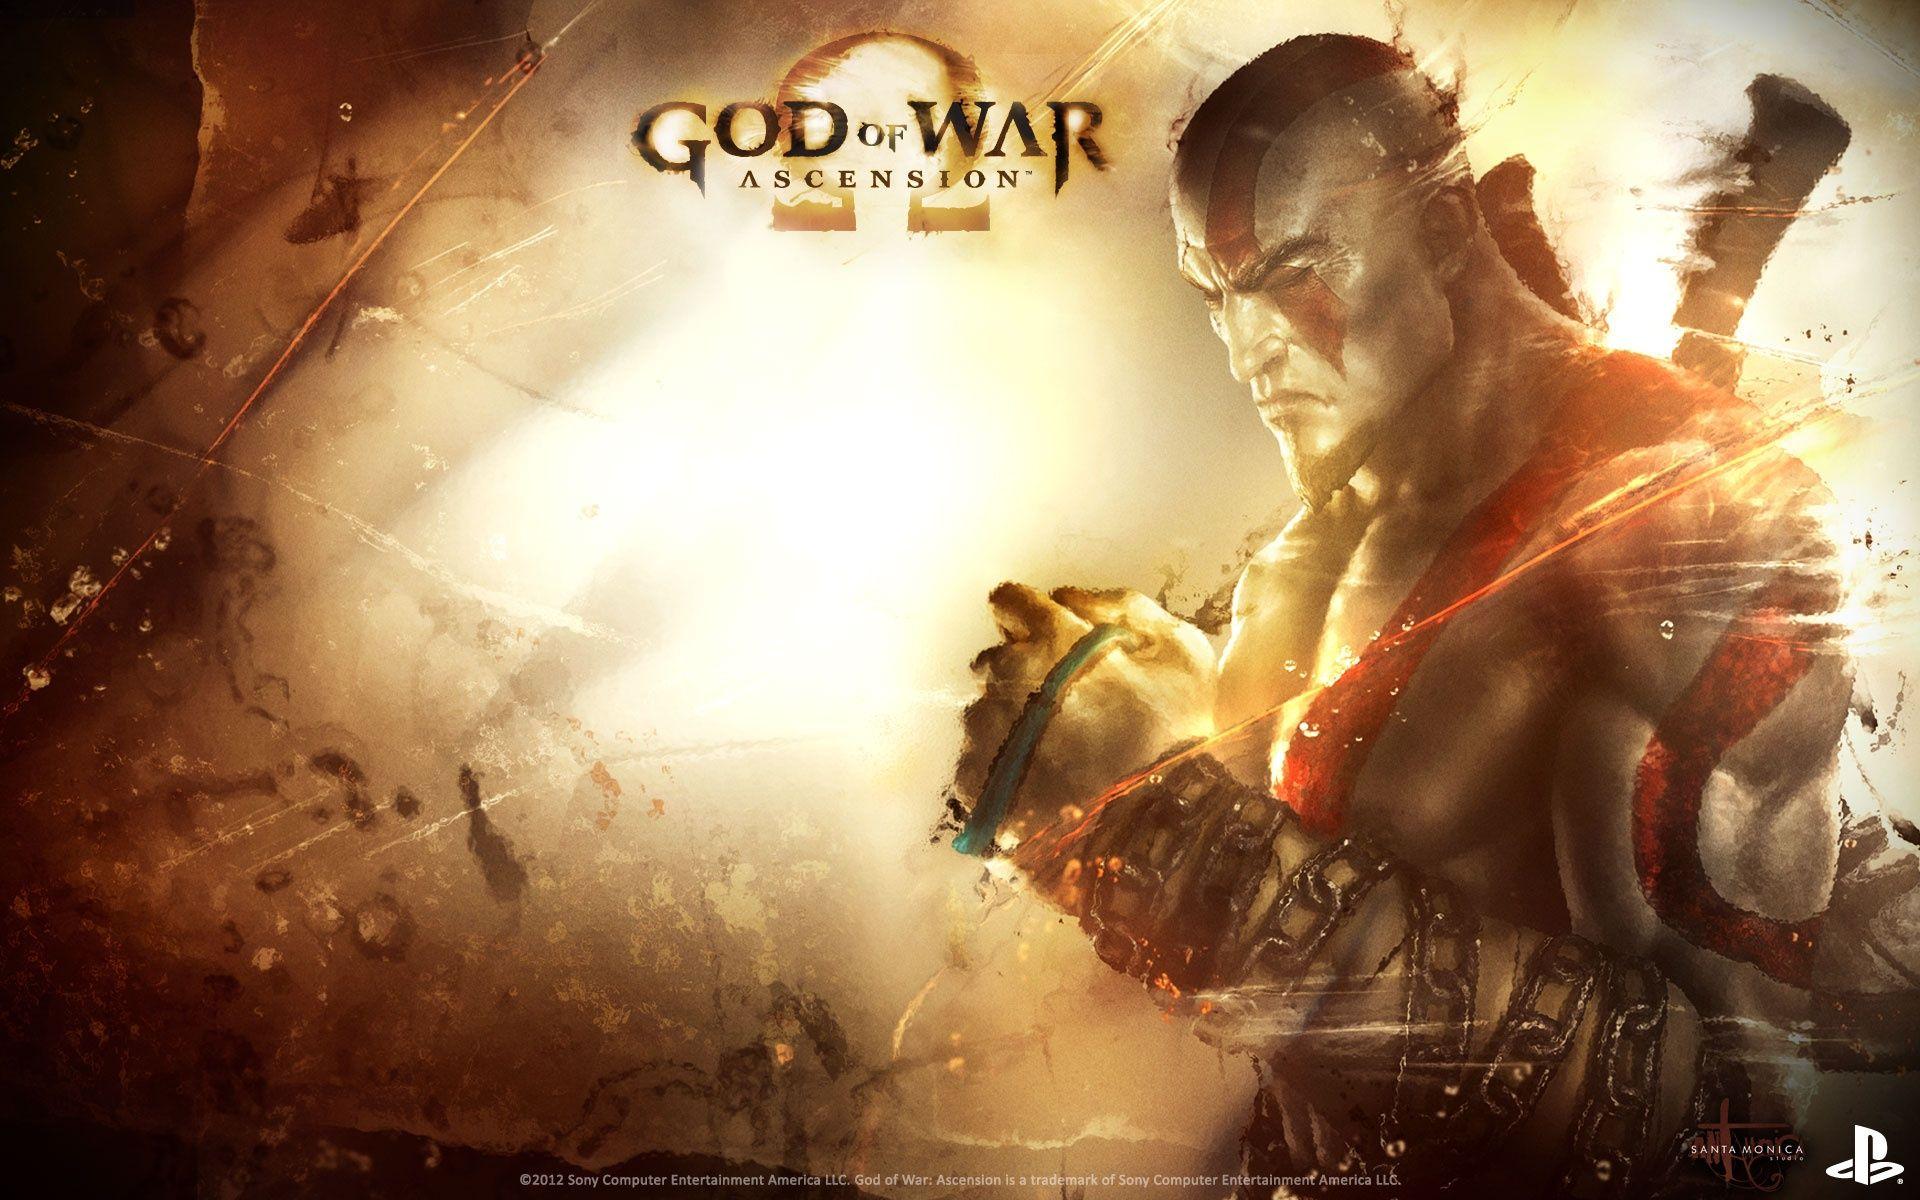 God of War Ascension Wallpaper in jpg format for free download